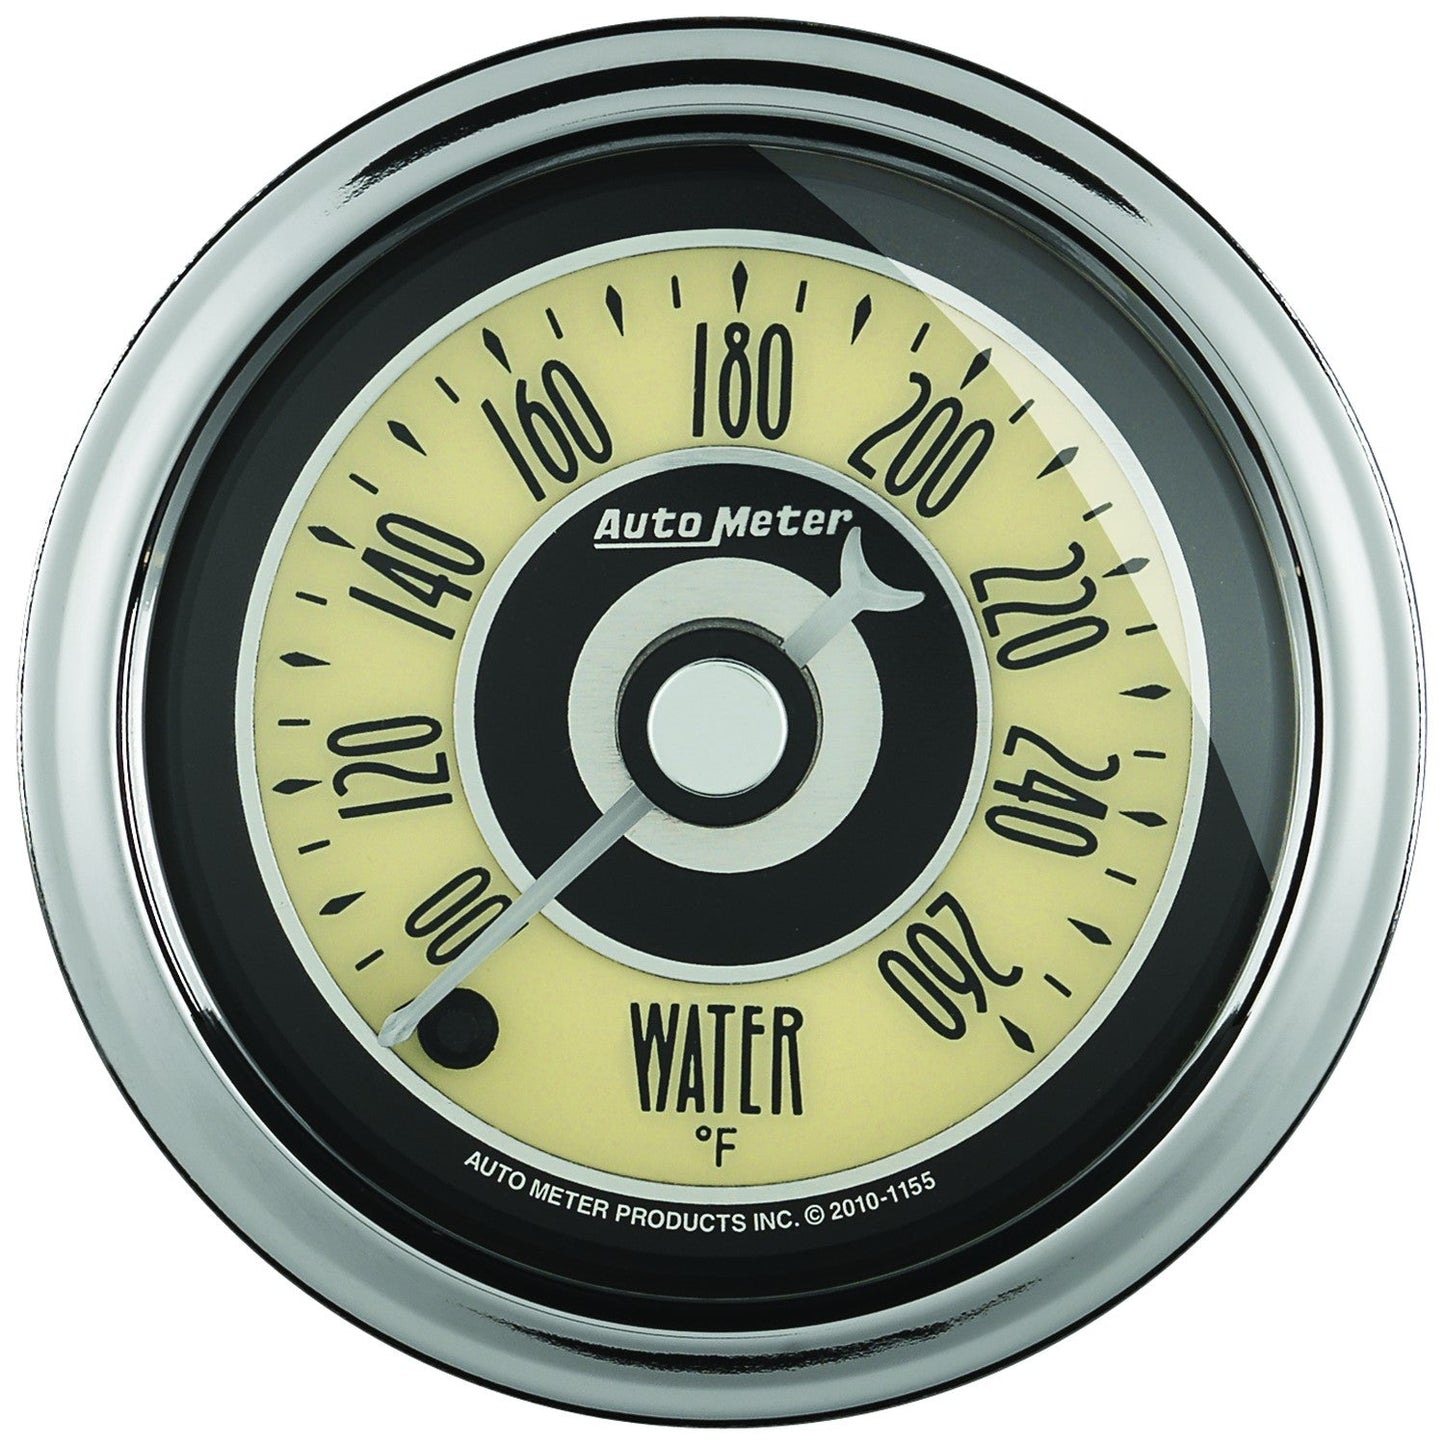 AutoMeter - 2-1/16" TEMPERATURA DEL AGUA, 100-260 °F, MOTOR PASO A PASO, CRUCERO AD (1154) 